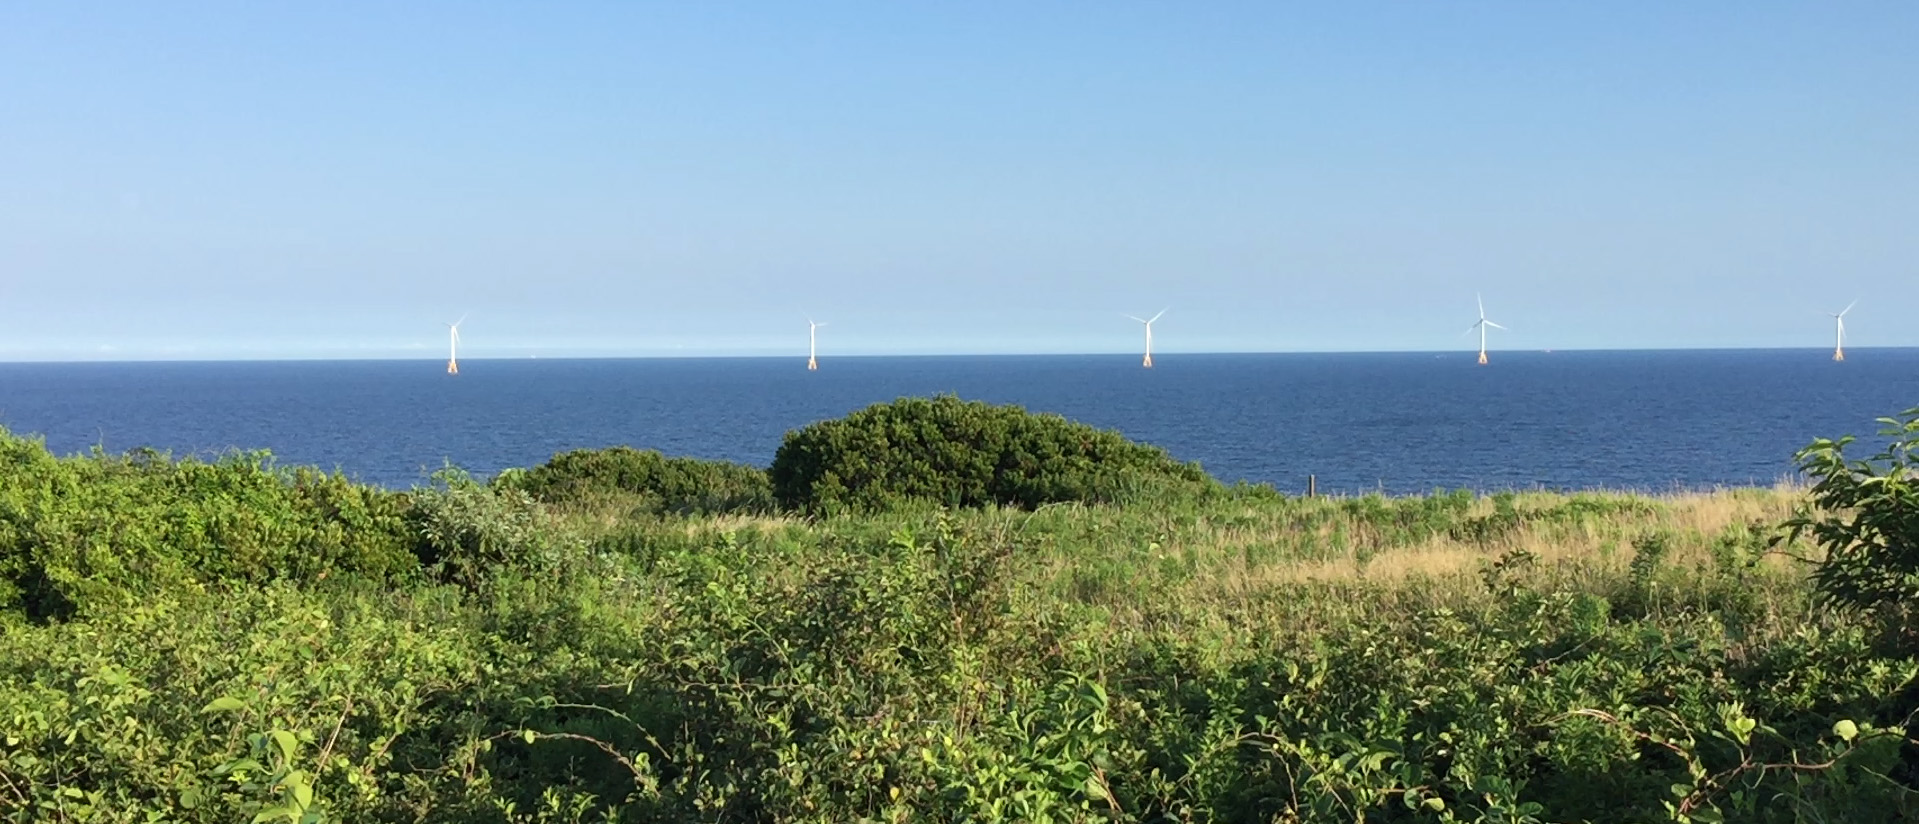 Wind farm off Block Island, RI